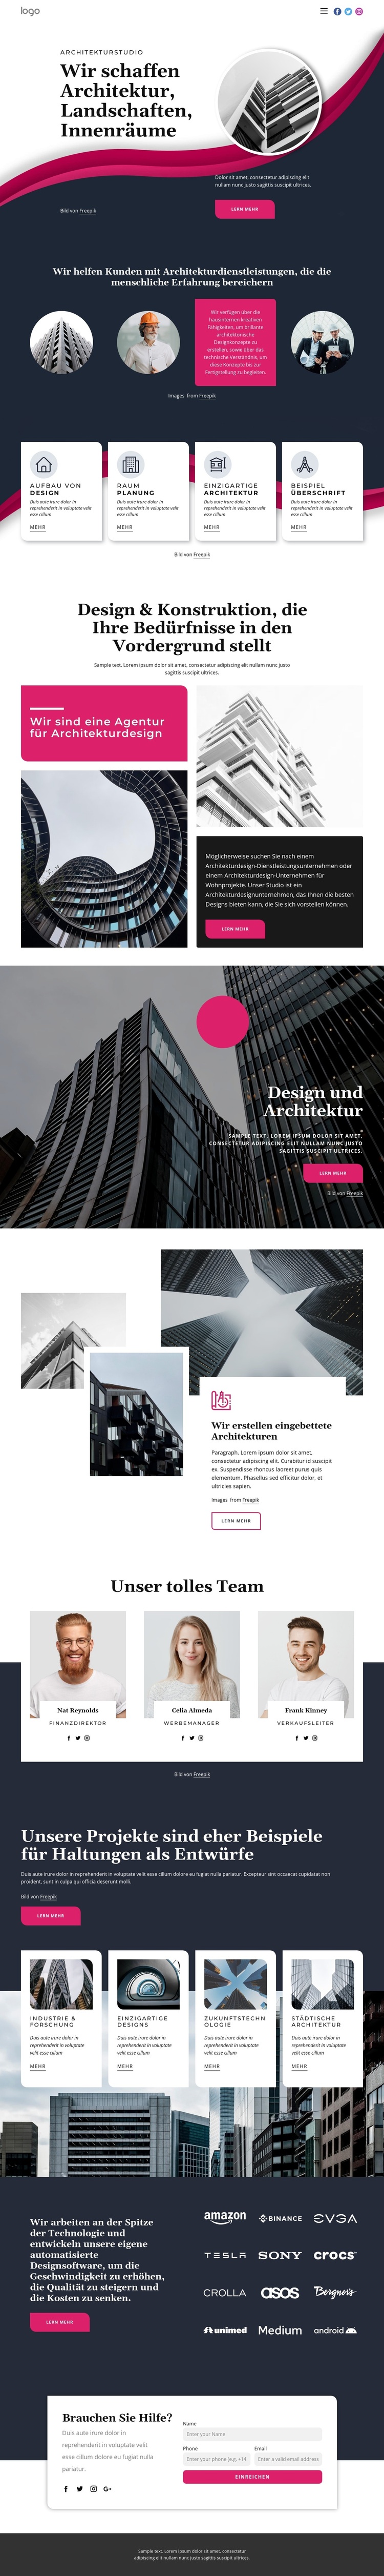 Wir schaffen großartige Architektur WordPress-Theme